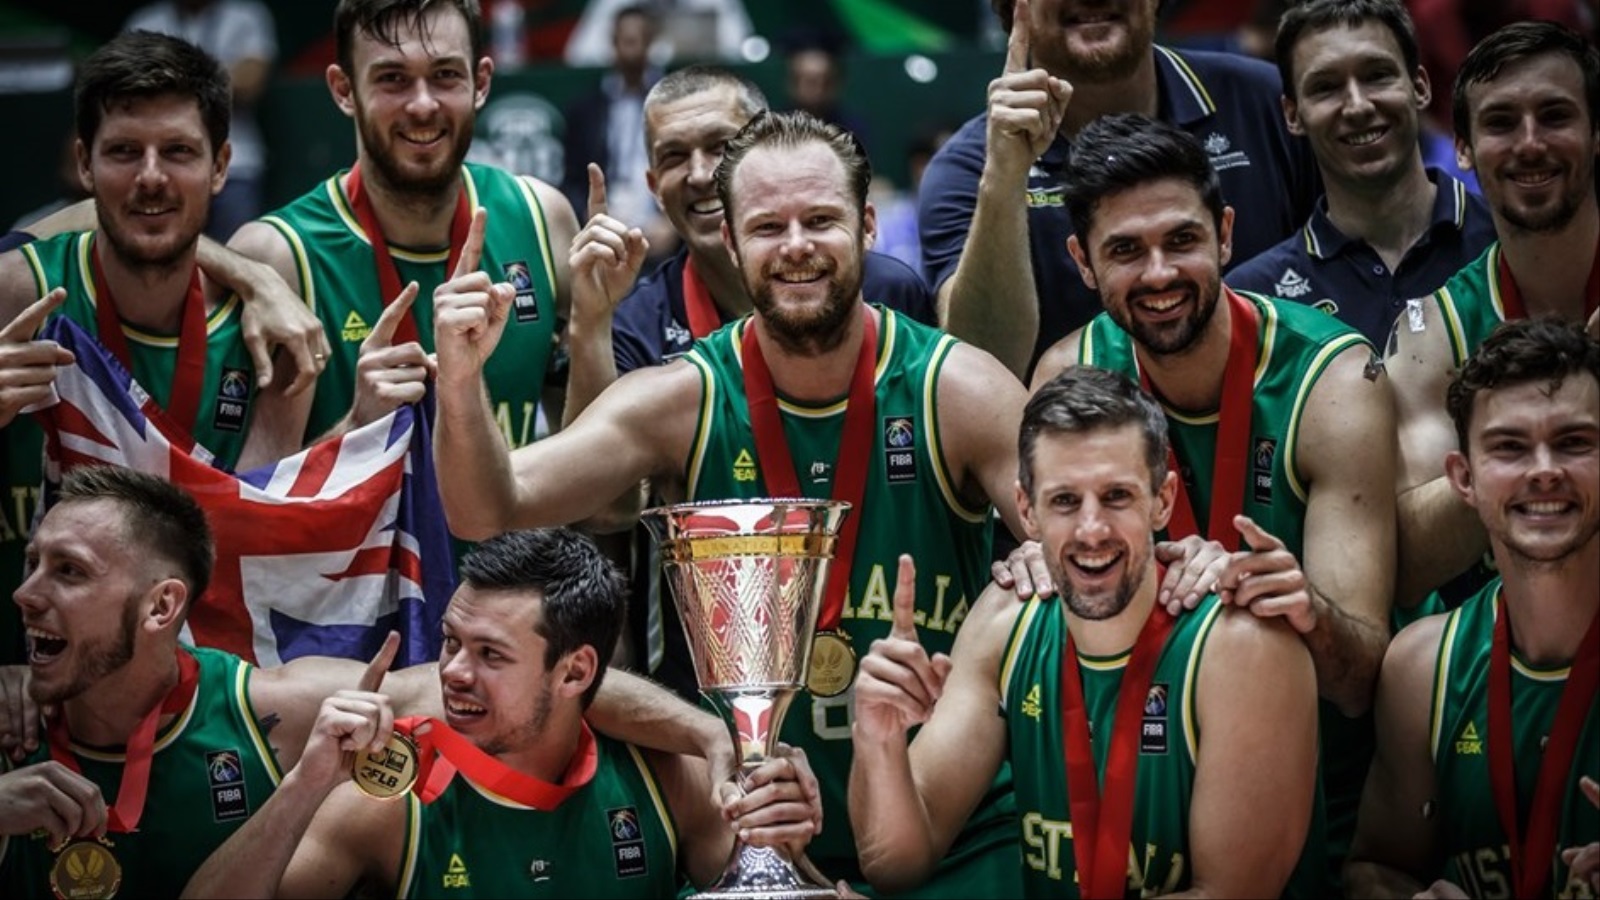  فوز المنتخب الأسترالي في نهائي بطولة آسيا لكرة السلة  ( فيبا - FIBA )